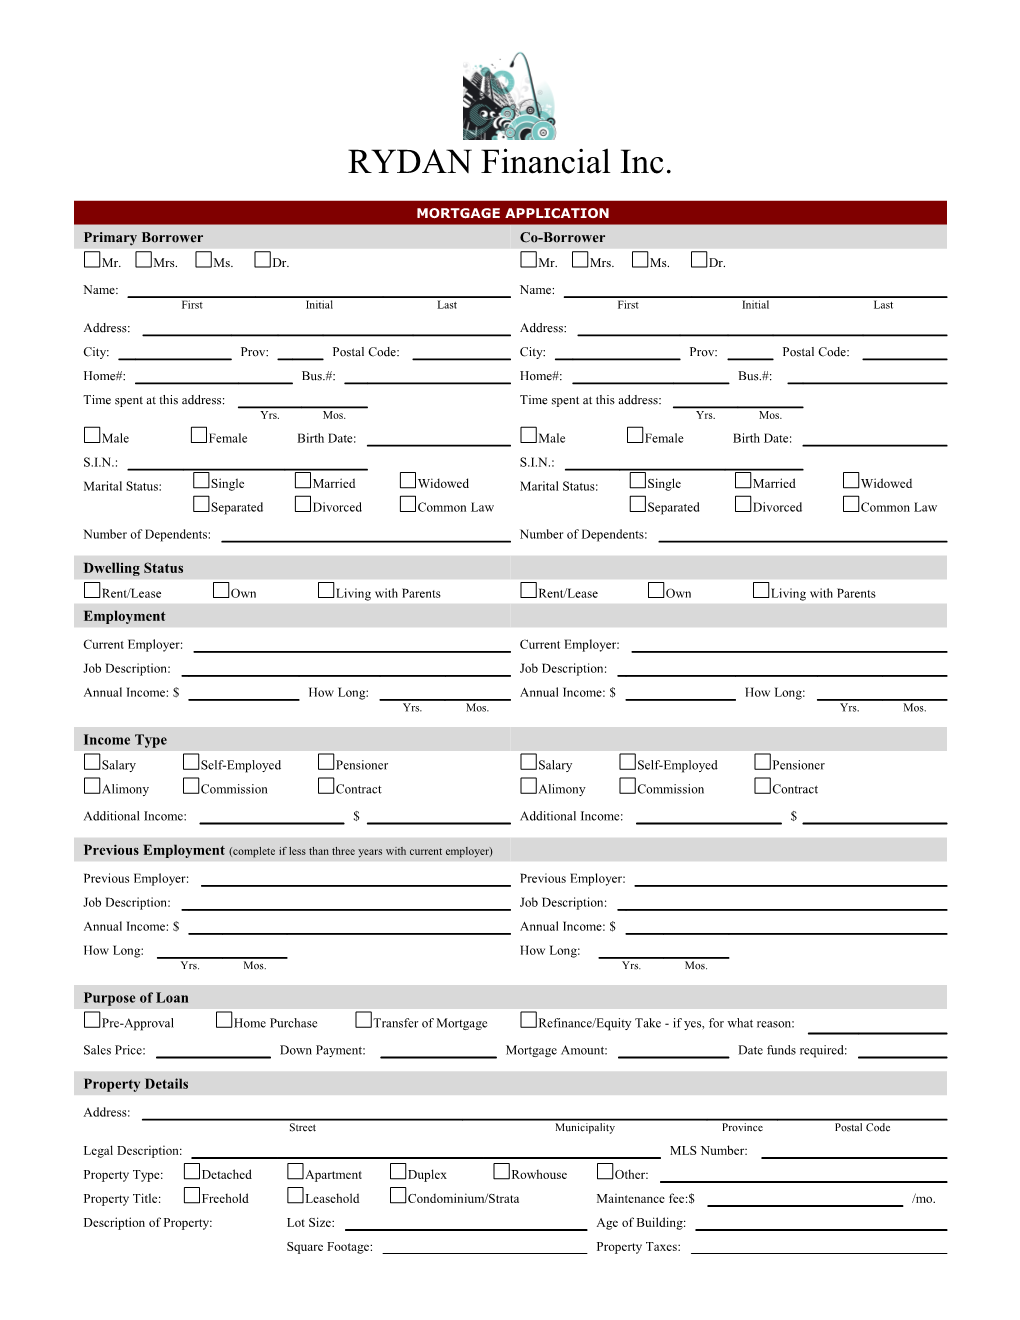 RYDAN Financial Inc